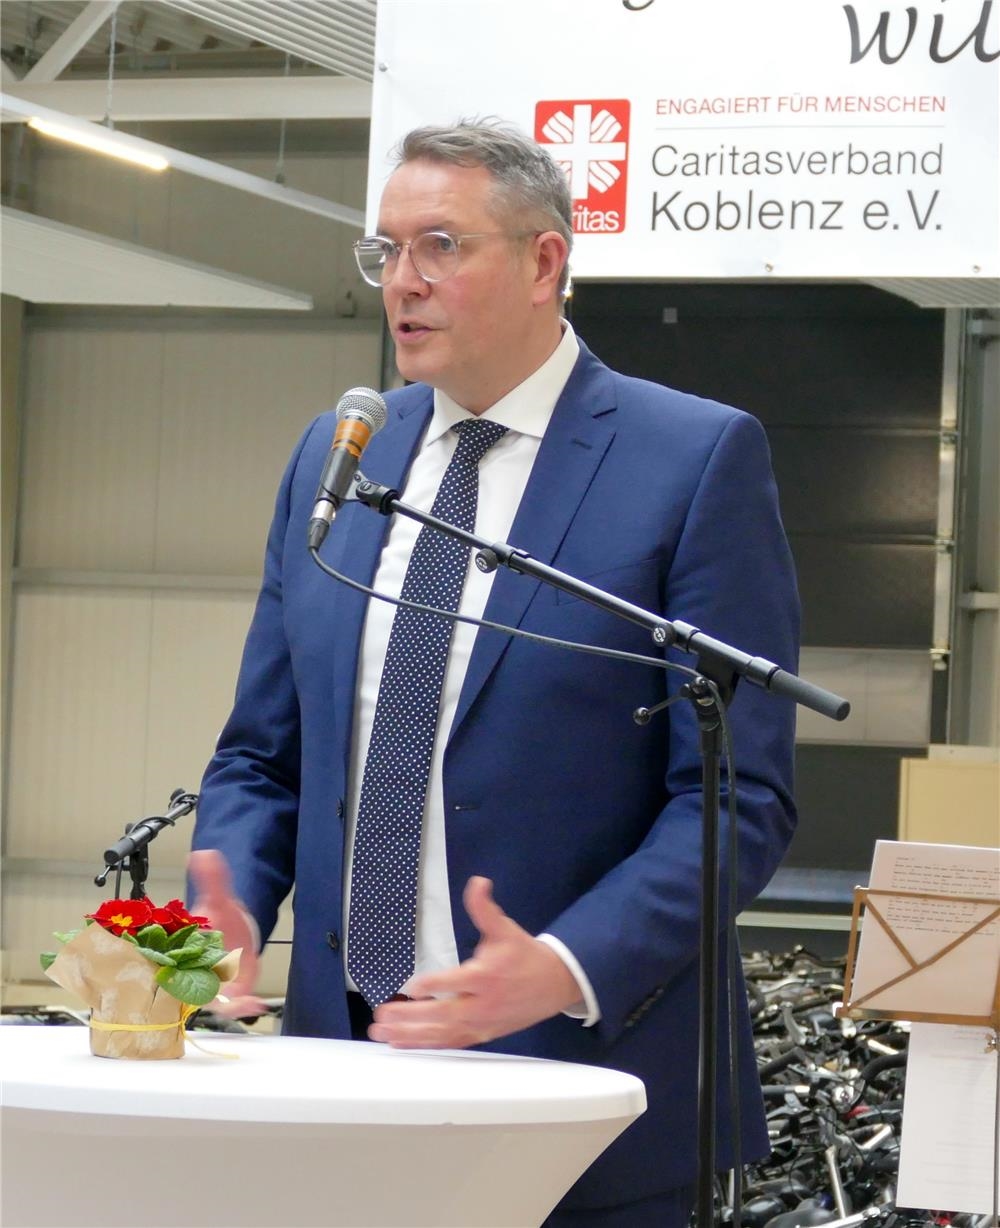 Alexander Schweitzer, Minister für Arbeit, Soziales, Transformation und Digitalisierung des Landes Rheinland-Pfalz (Foto: Marco Wagner)